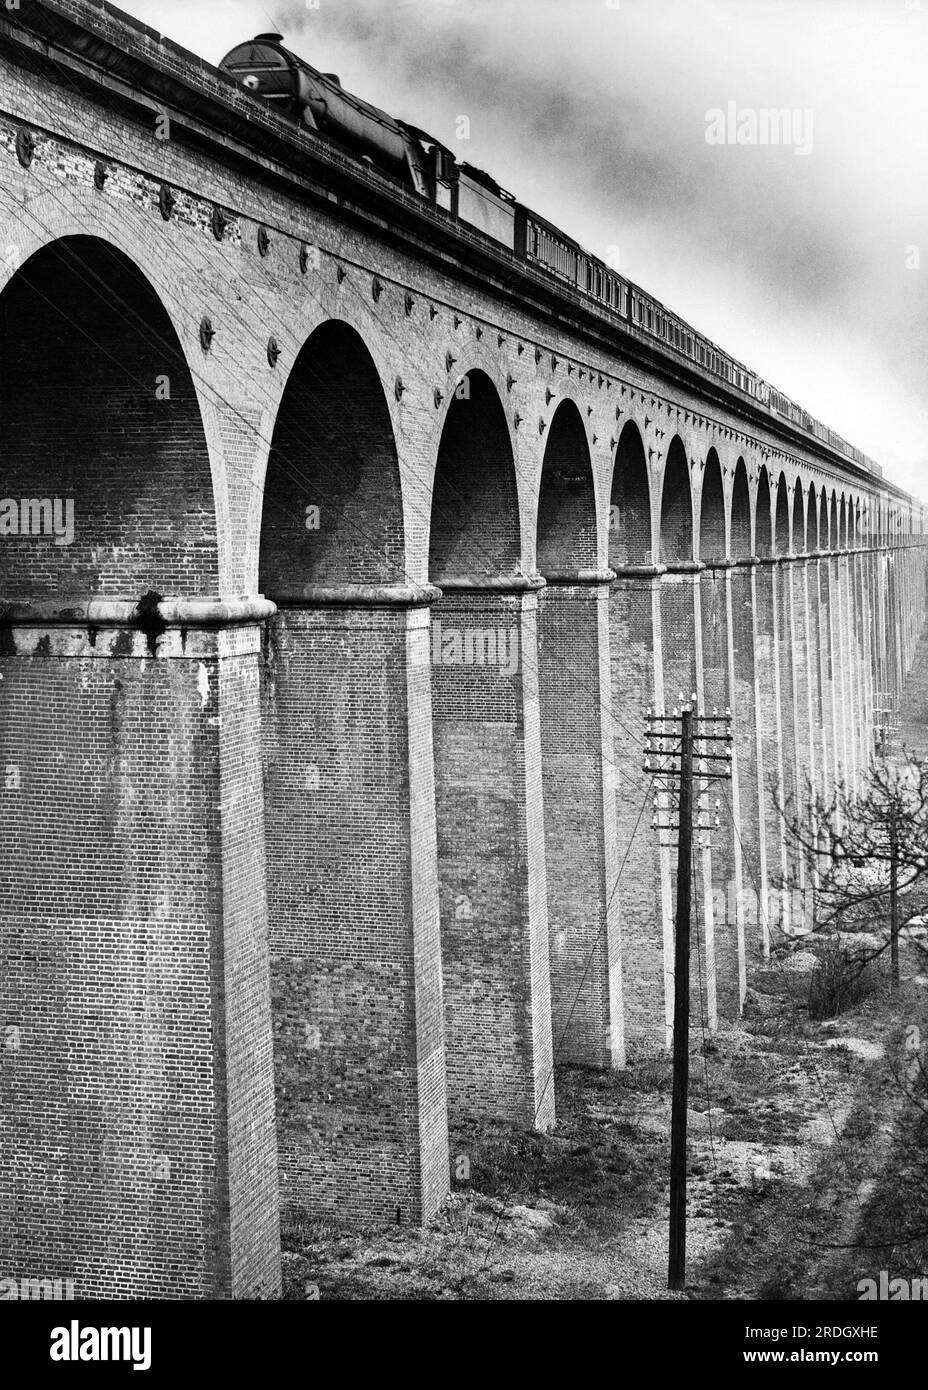 Welwyn, England: 12. April 1933 Ein schottischer Expresszug fährt nach Norden, wenn er das berühmte Viadukt in Hertfordshire überquert. Stockfoto